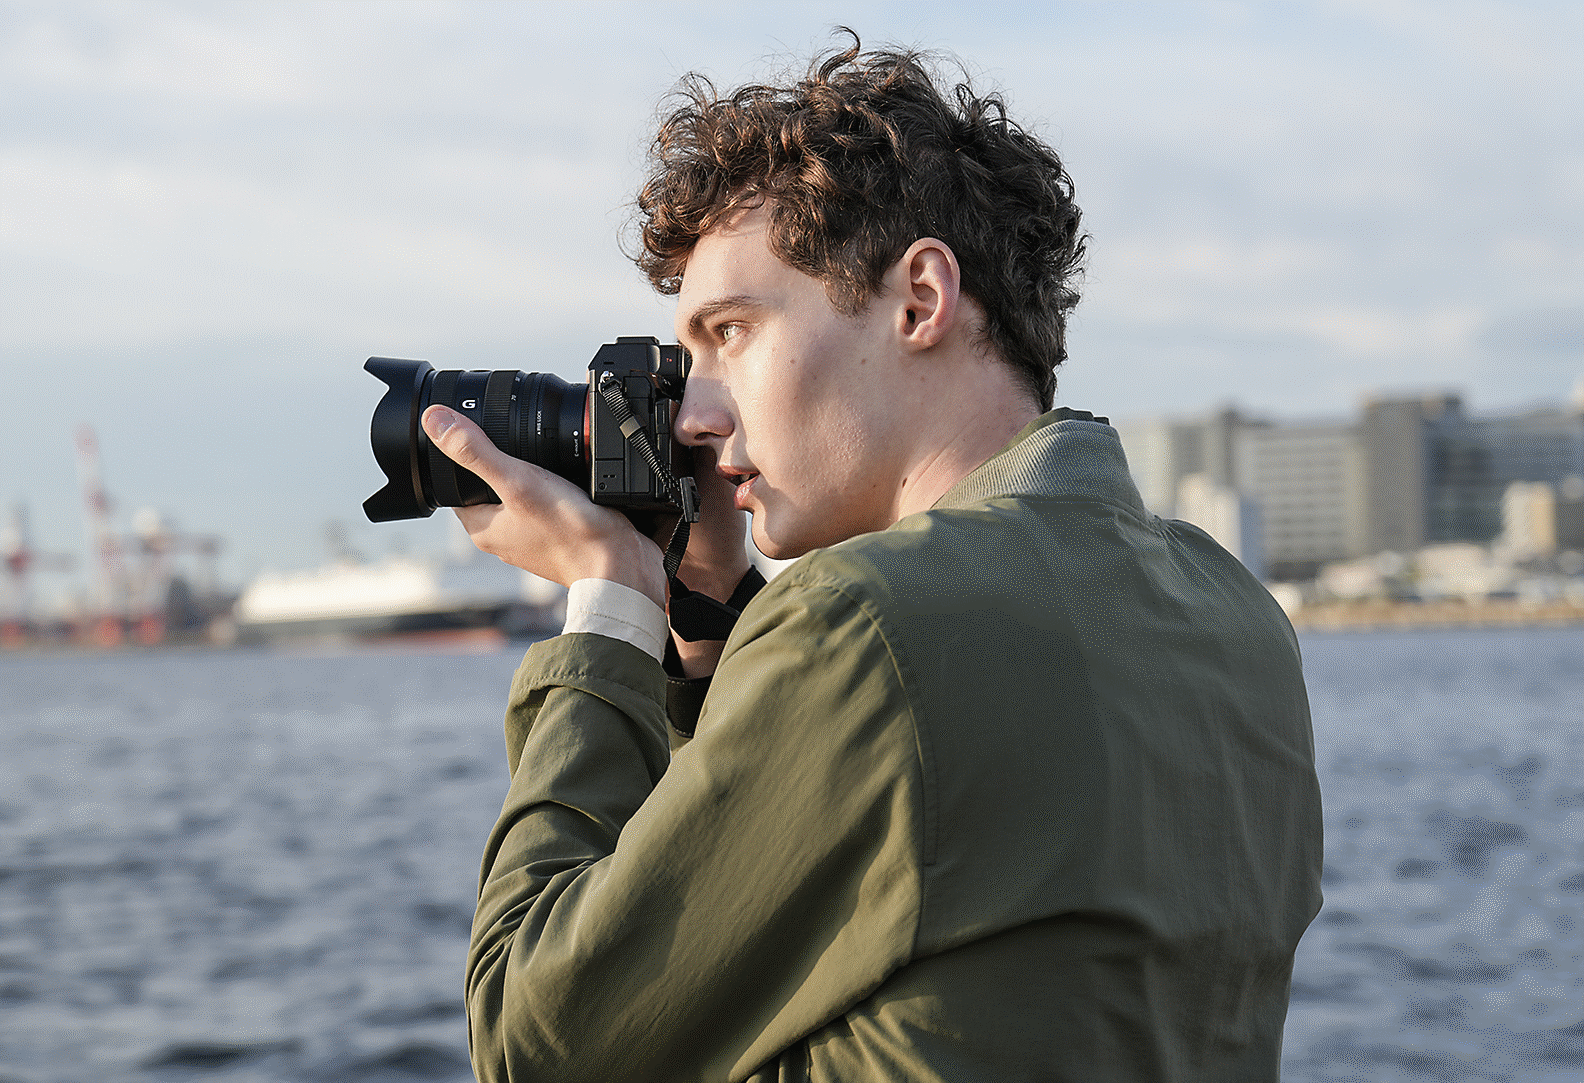 Mies kuvaa rannikolla käyttäen kädessä pideltävää kameraa ja etsintä